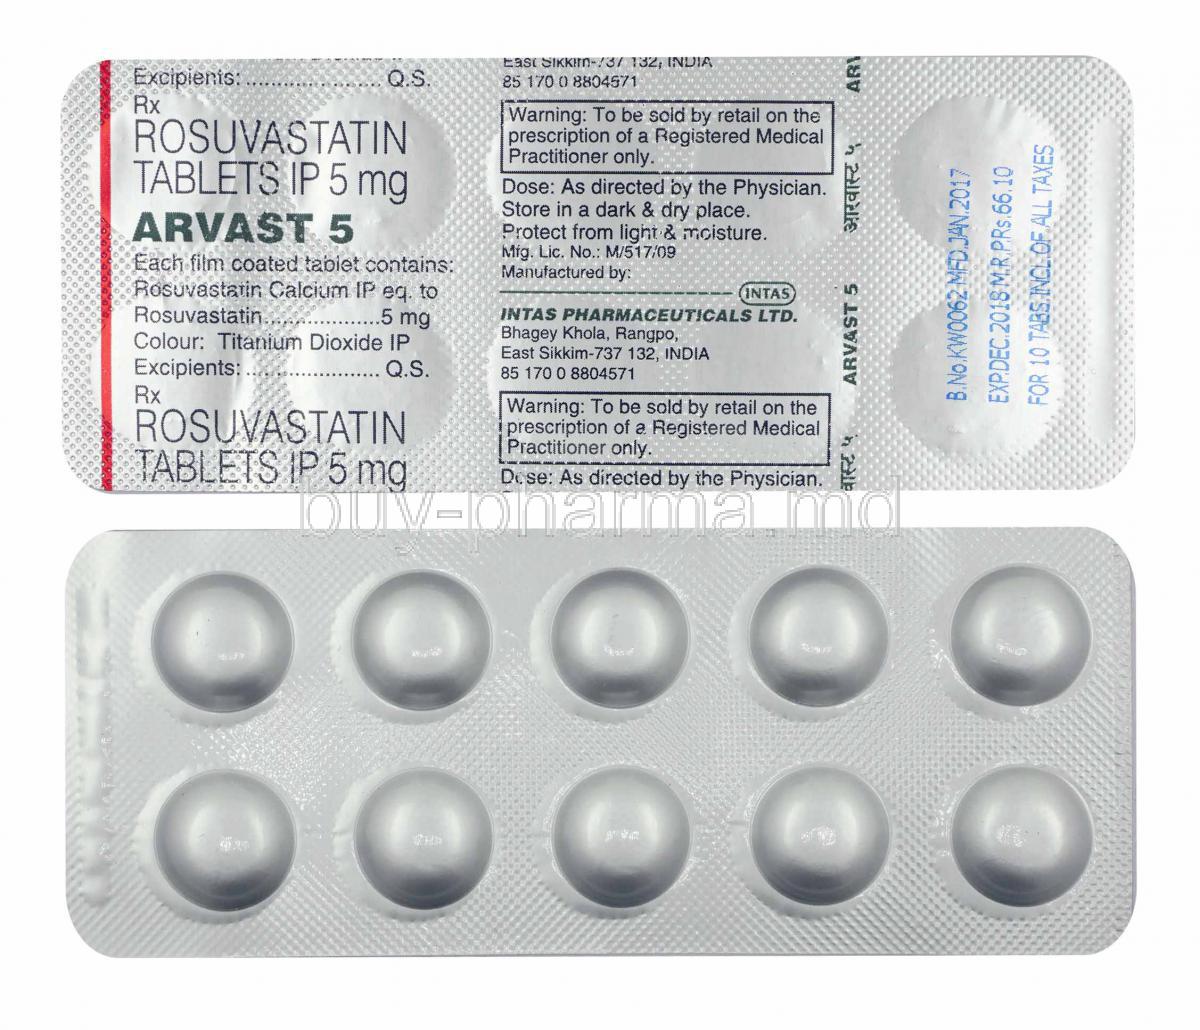 rosuvastatin used to treat